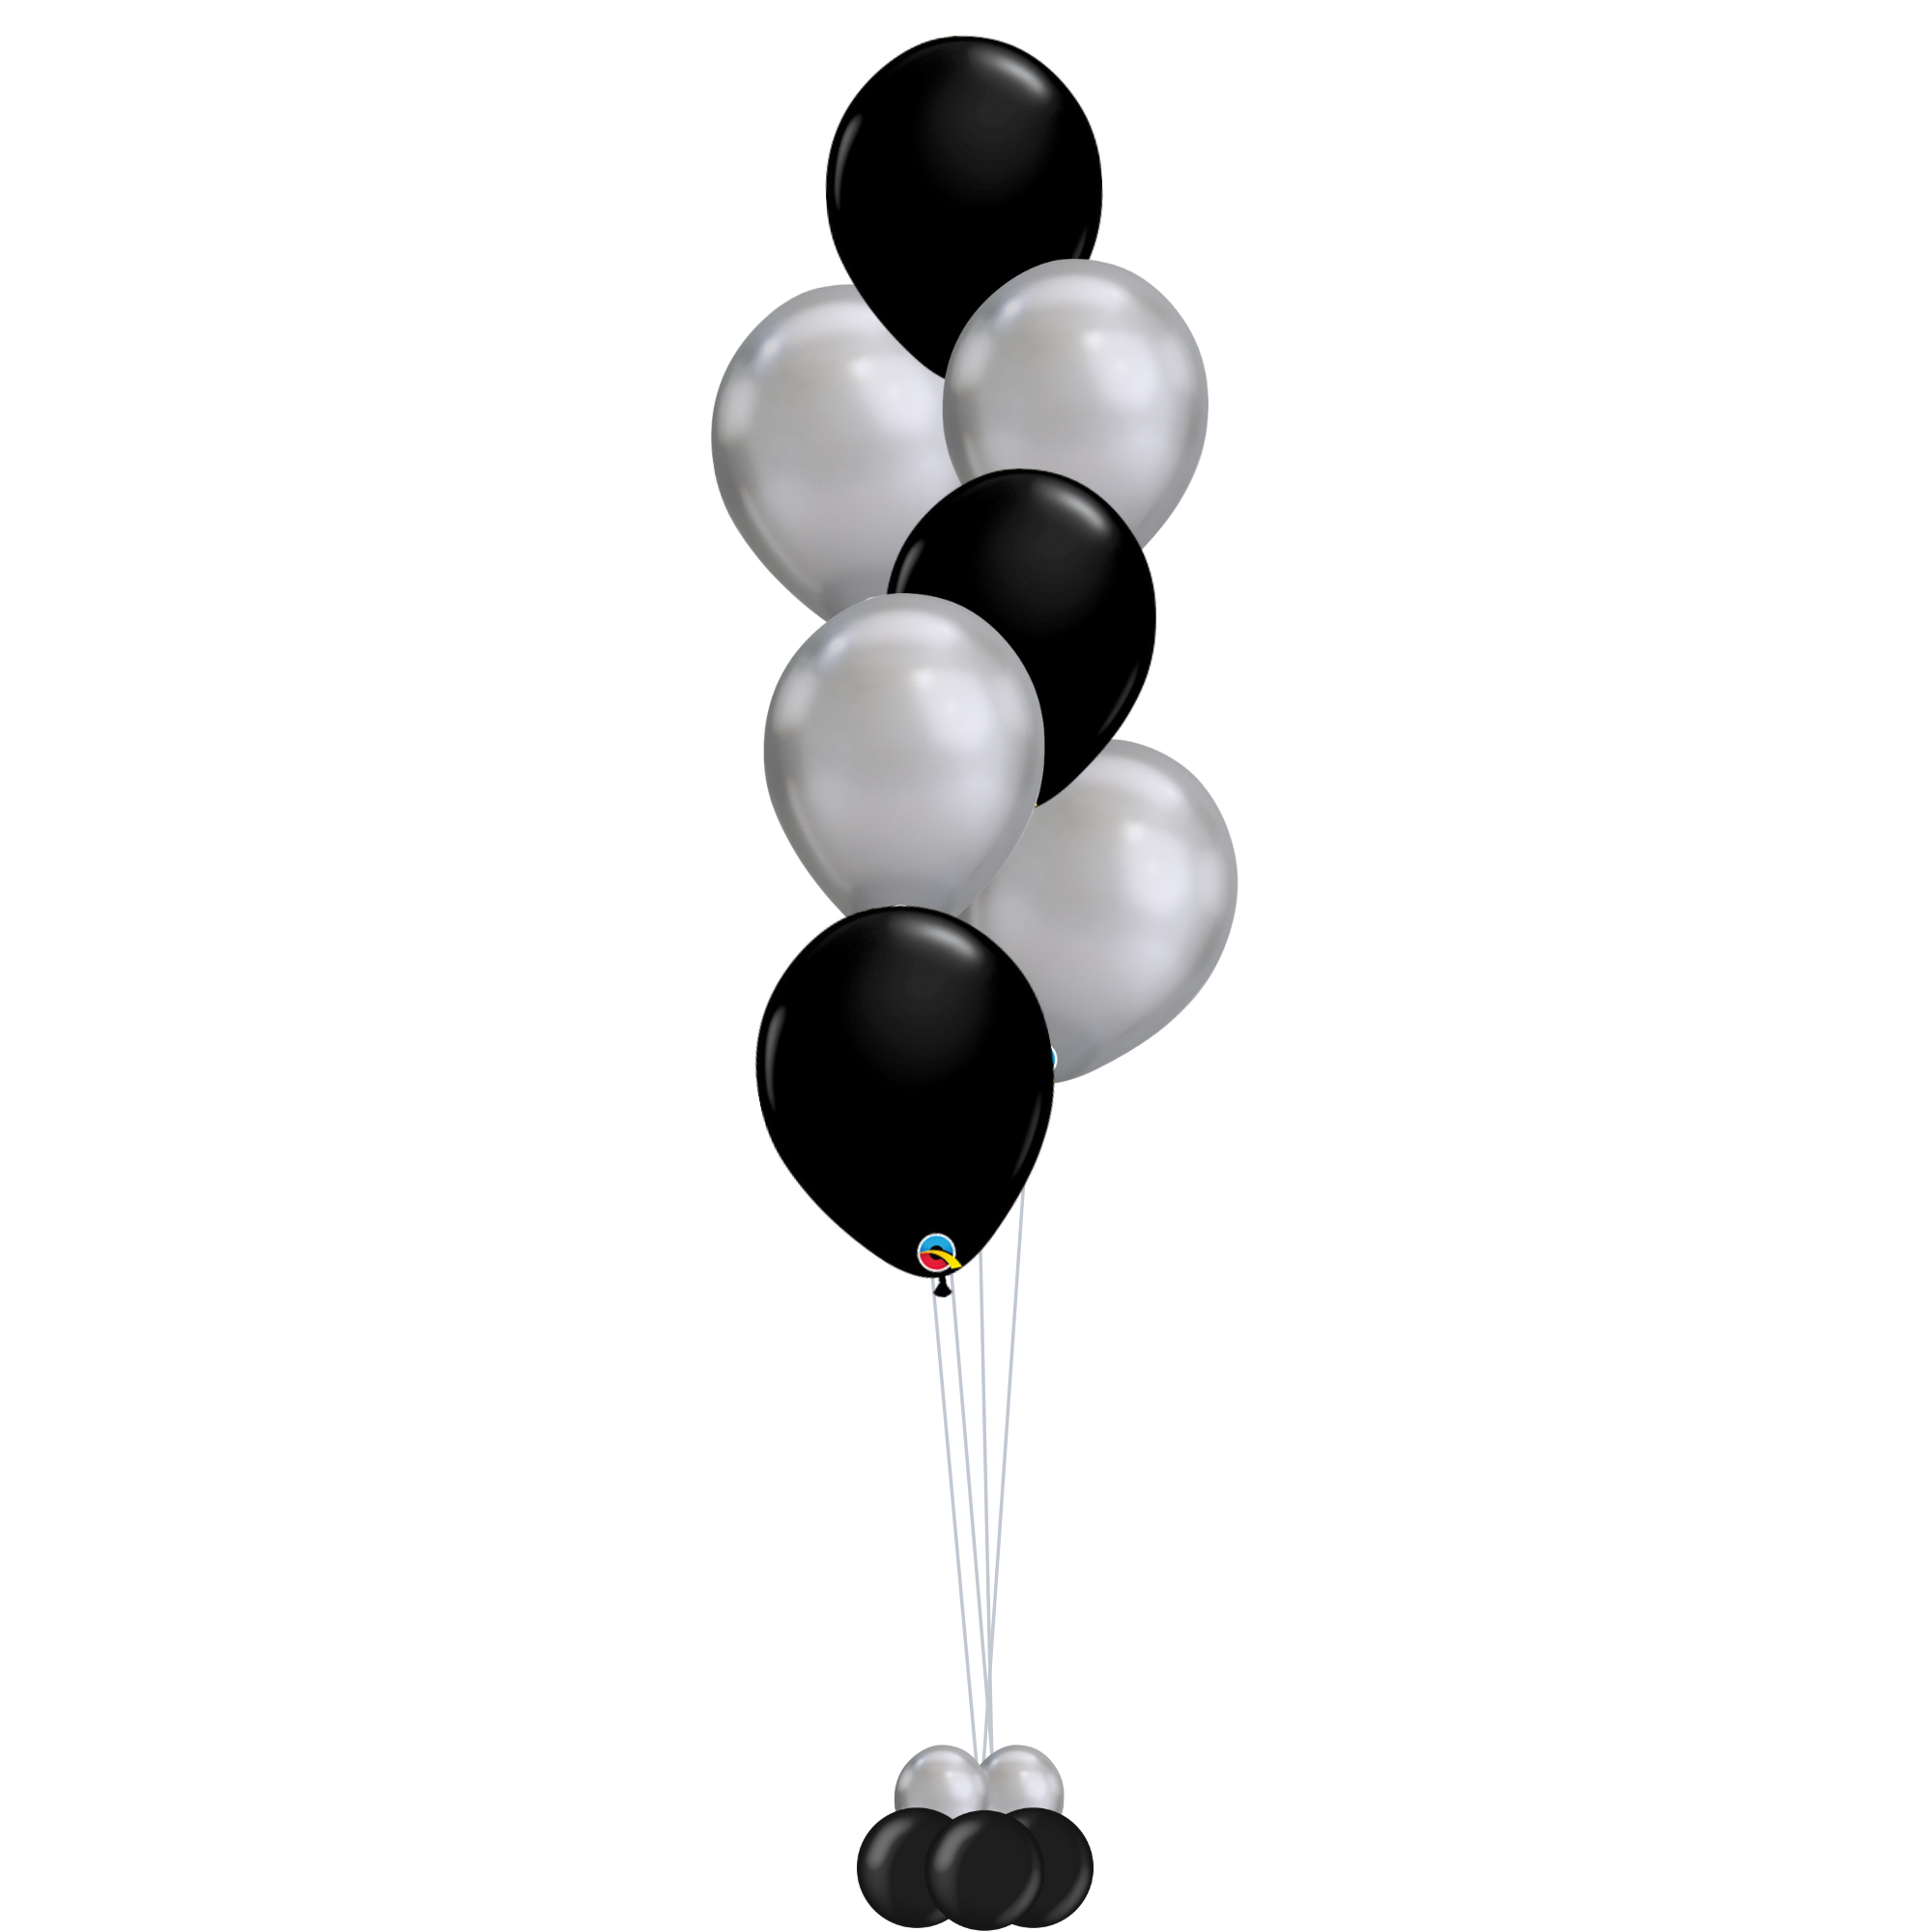 Birthday Balloon Bundle (Silver, Black & White)